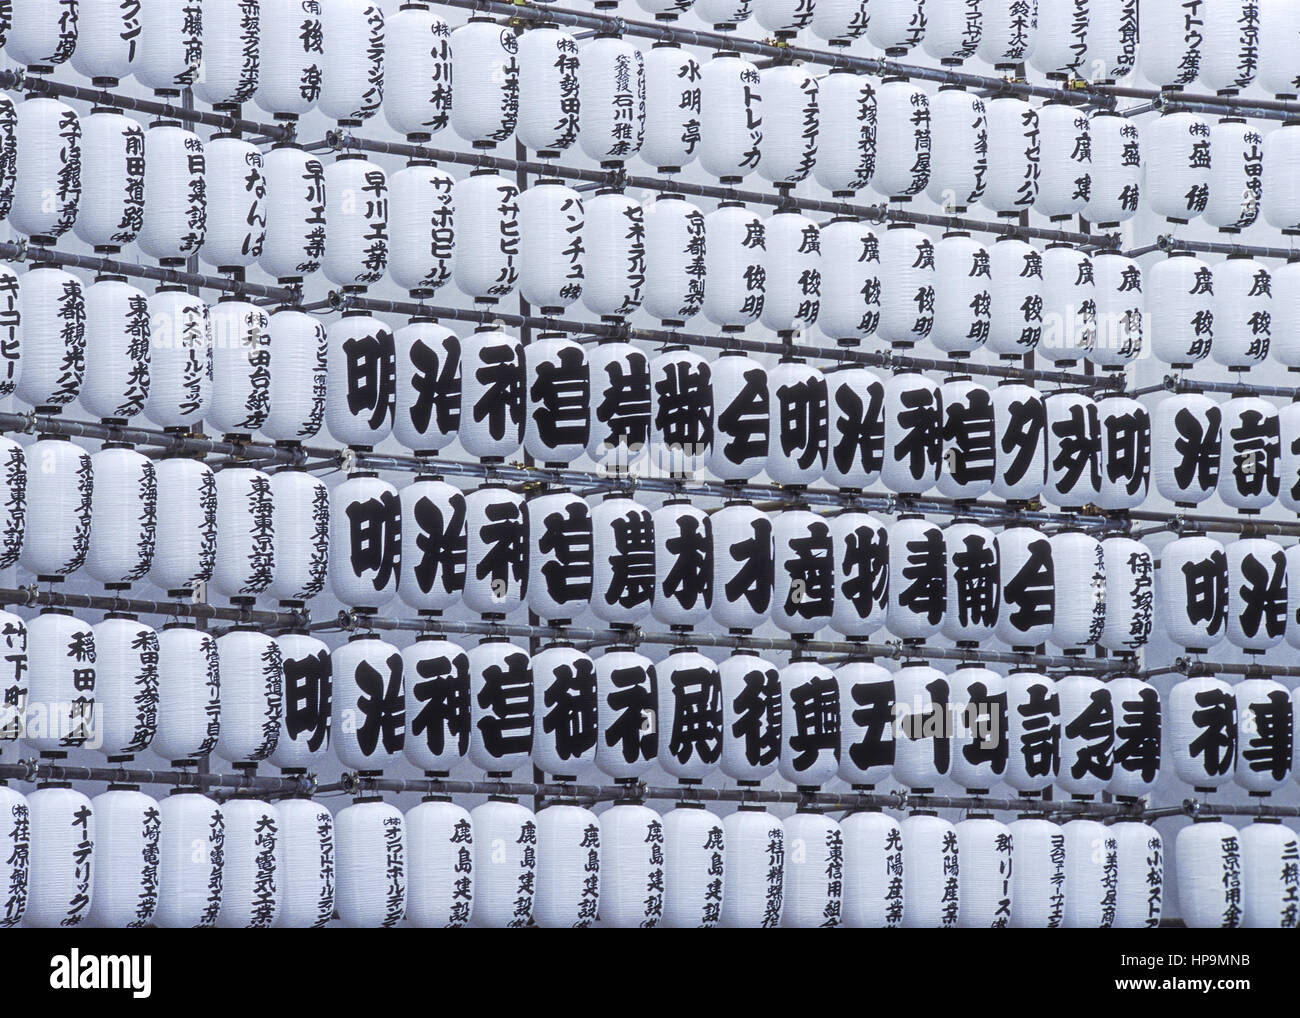 Japanische Schriftzeichen auf Papierlampions, Tokio, Japan Stock Photo